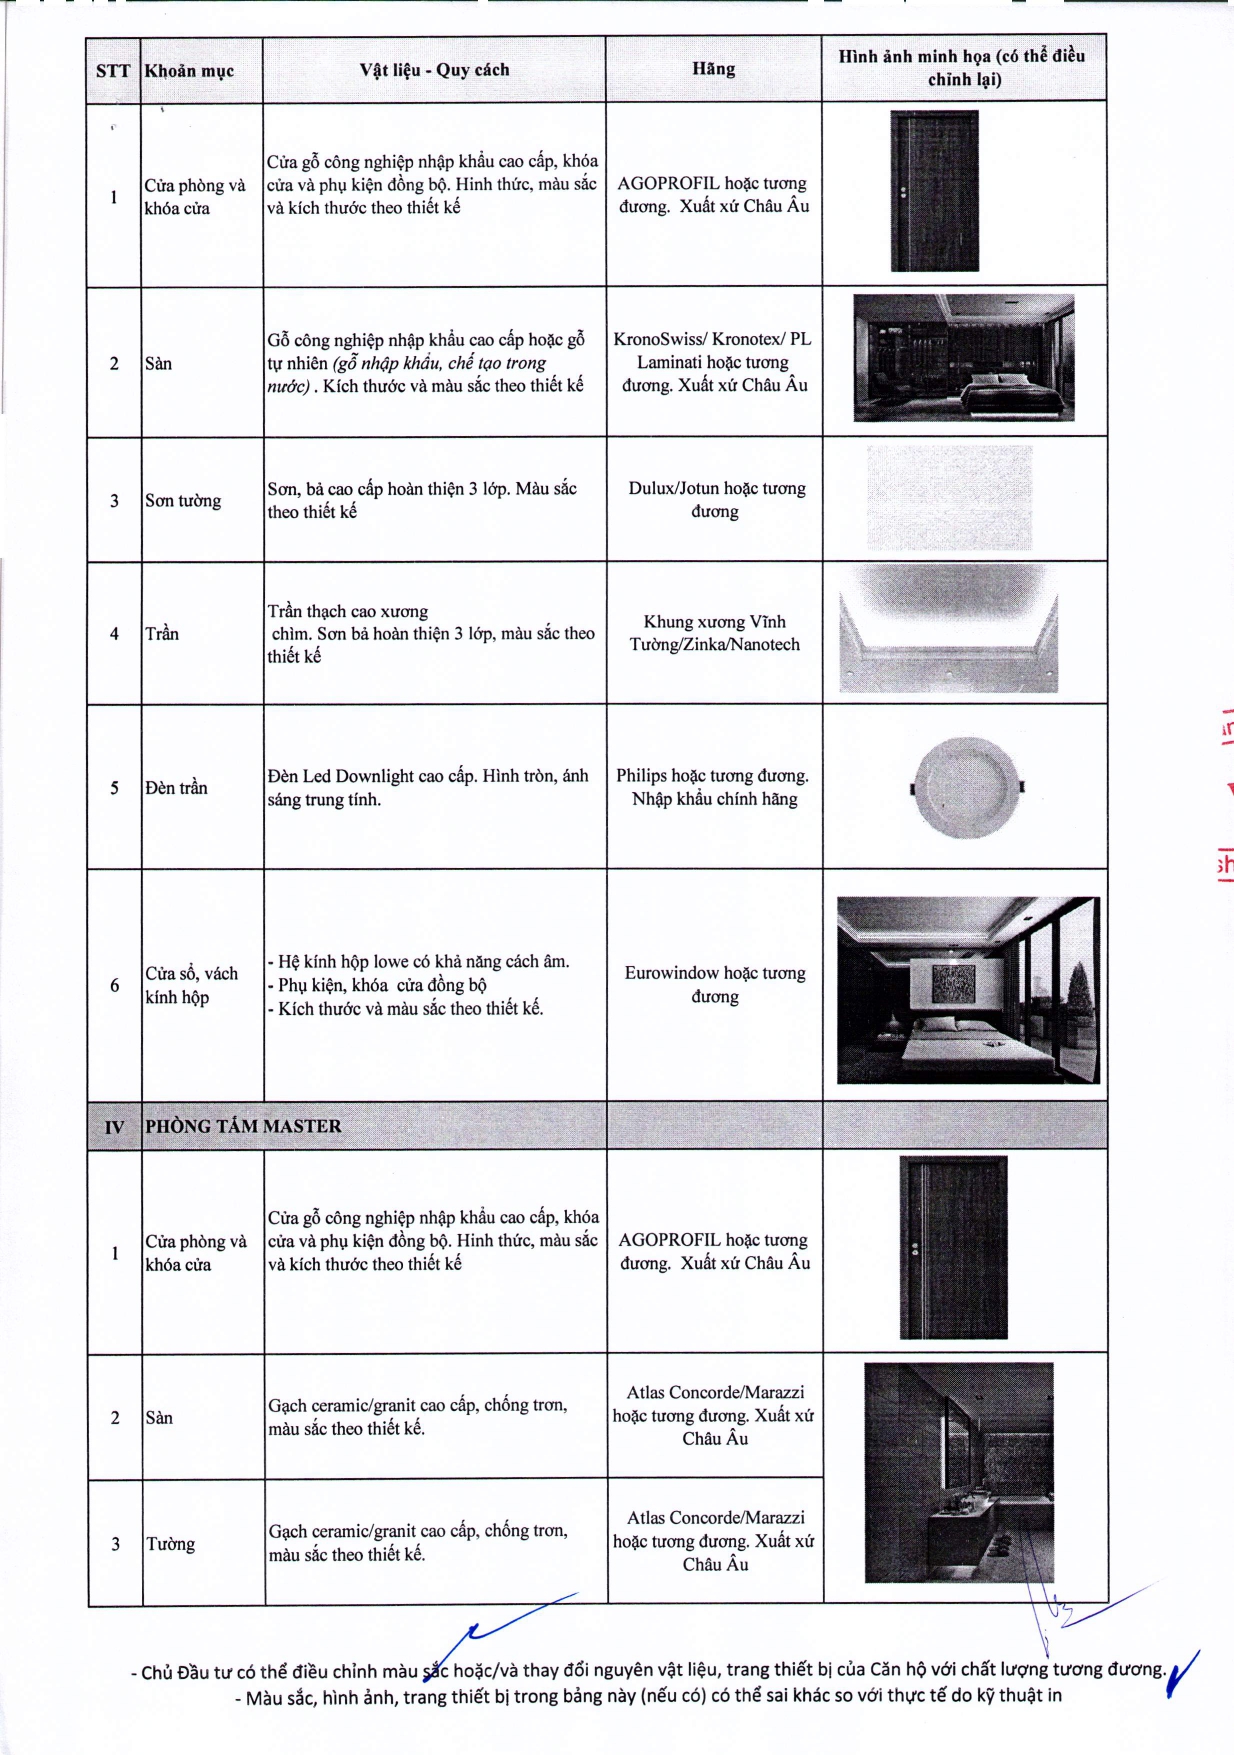 02.08.2019. Danh mục vật liệu và trang thiết bị bên trong căn hộ - Golden River (1)_page-0003